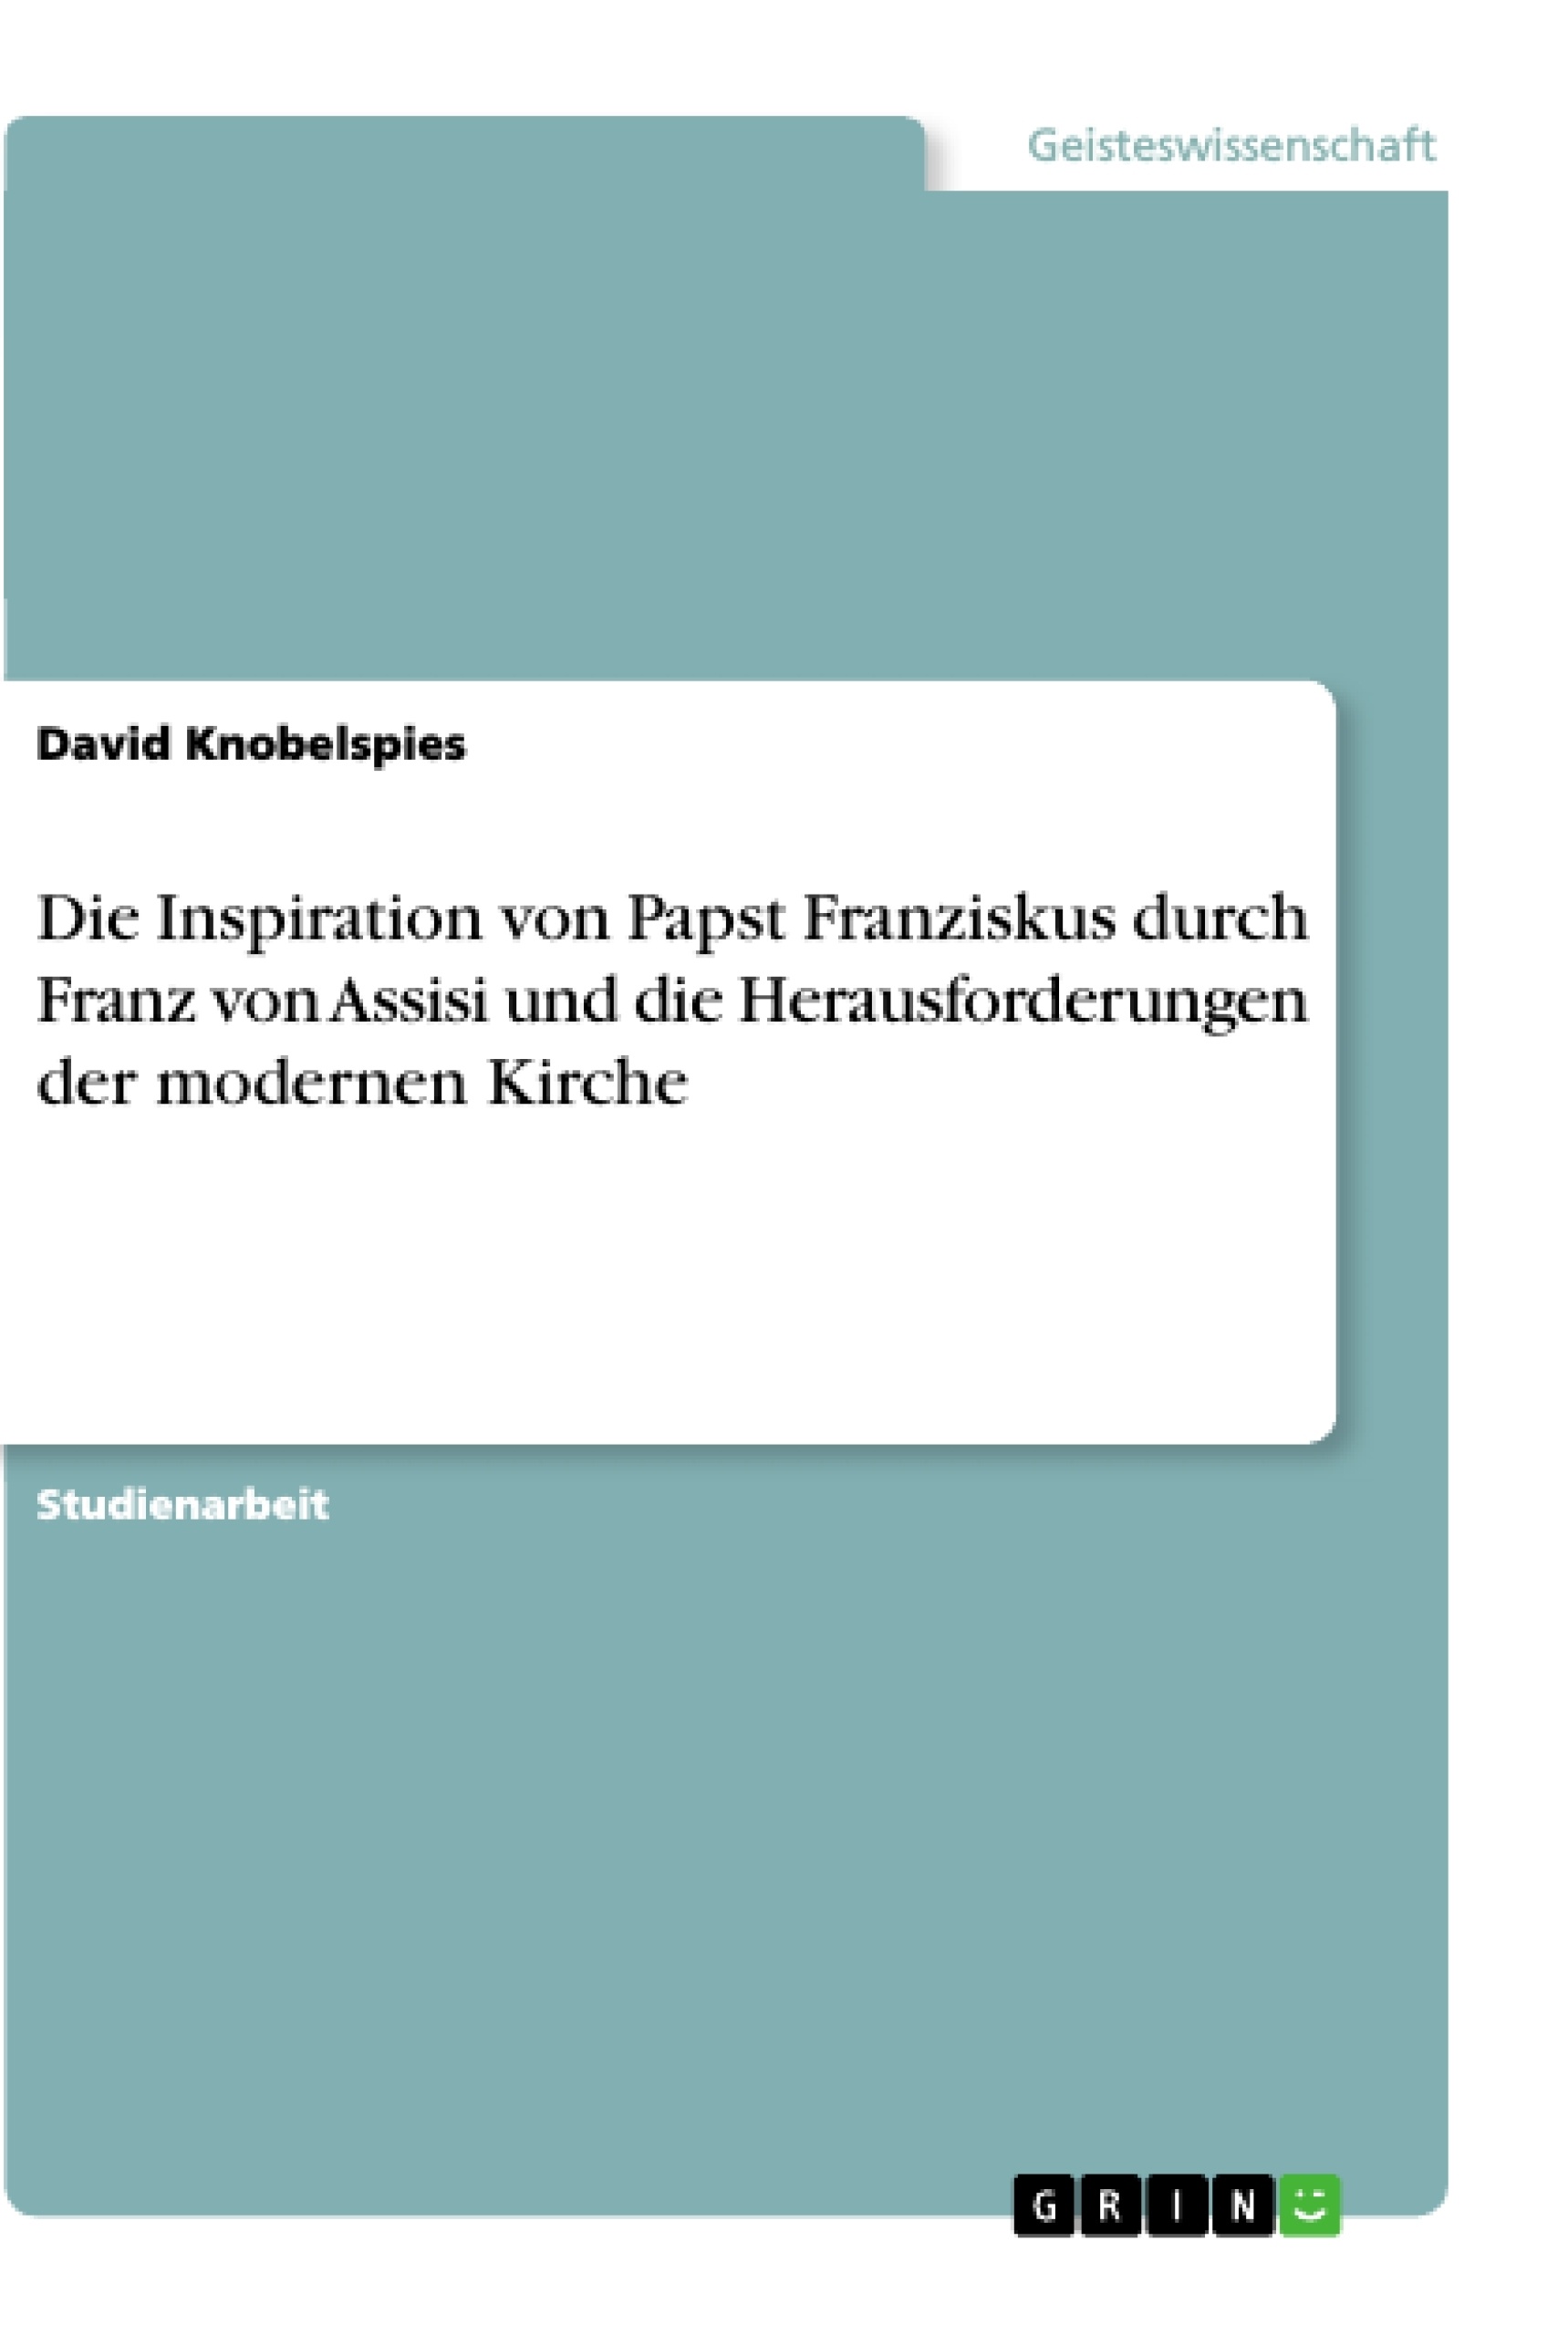 Título: Die Inspiration von Papst Franziskus durch Franz von Assisi und die Herausforderungen der modernen Kirche